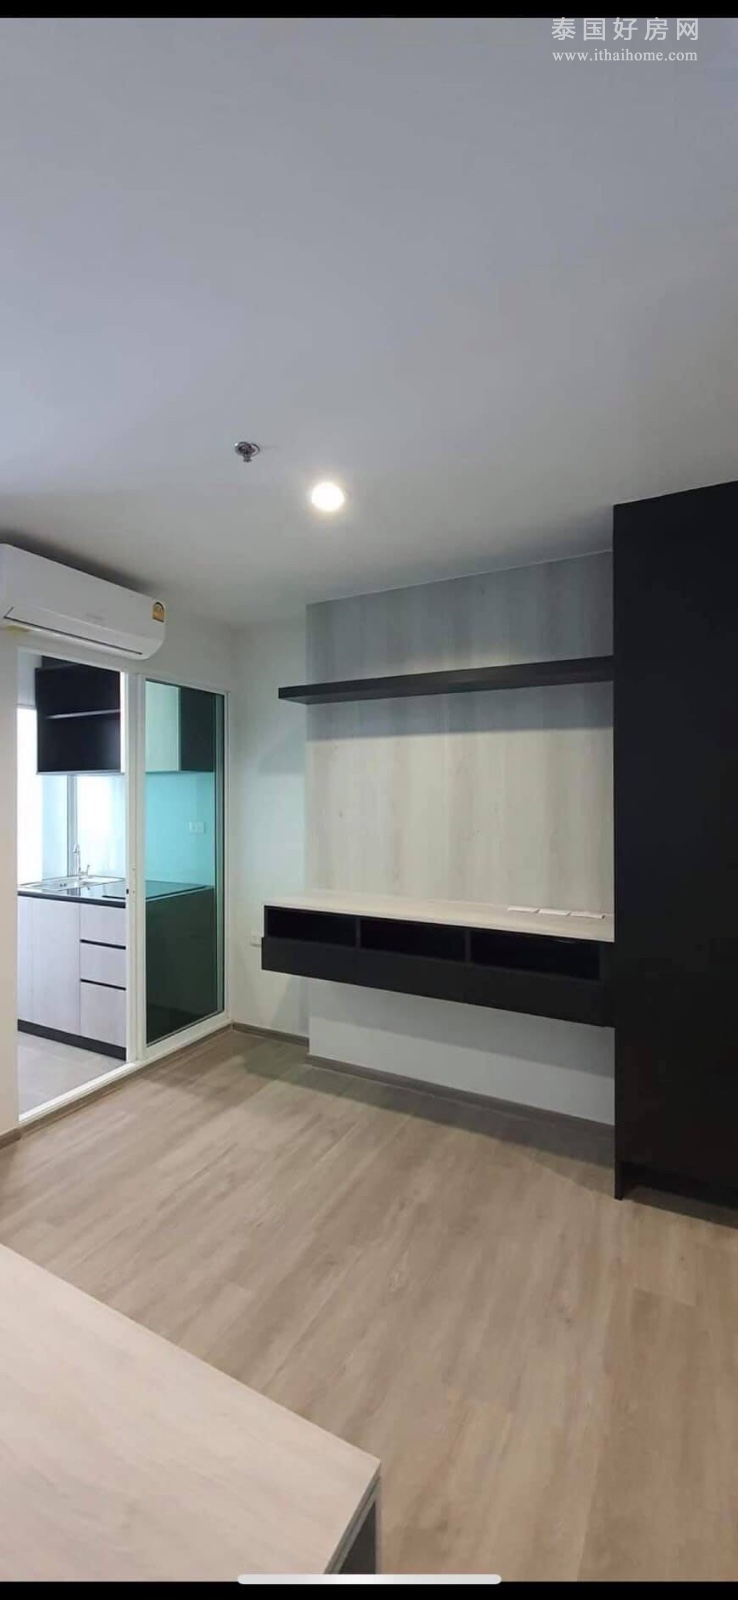 【推荐】Regent Home Bangson Phase 28 公寓出租 1卧28平米 7,500泰铢/月